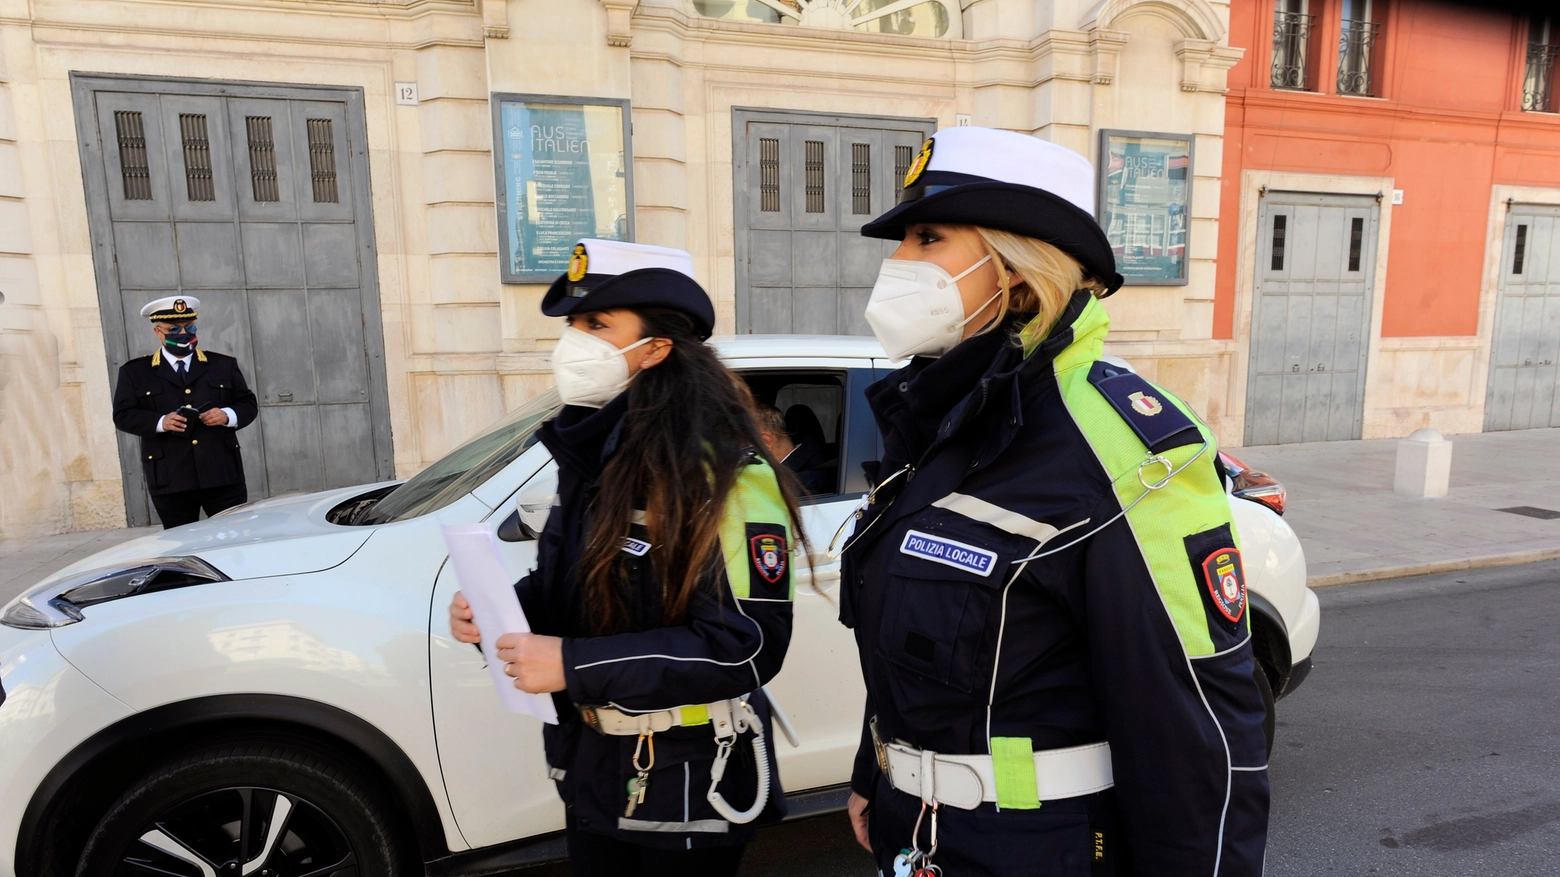 Maxisequestro di mascherine non conformi destinate a sanitari e forze dell'ordine